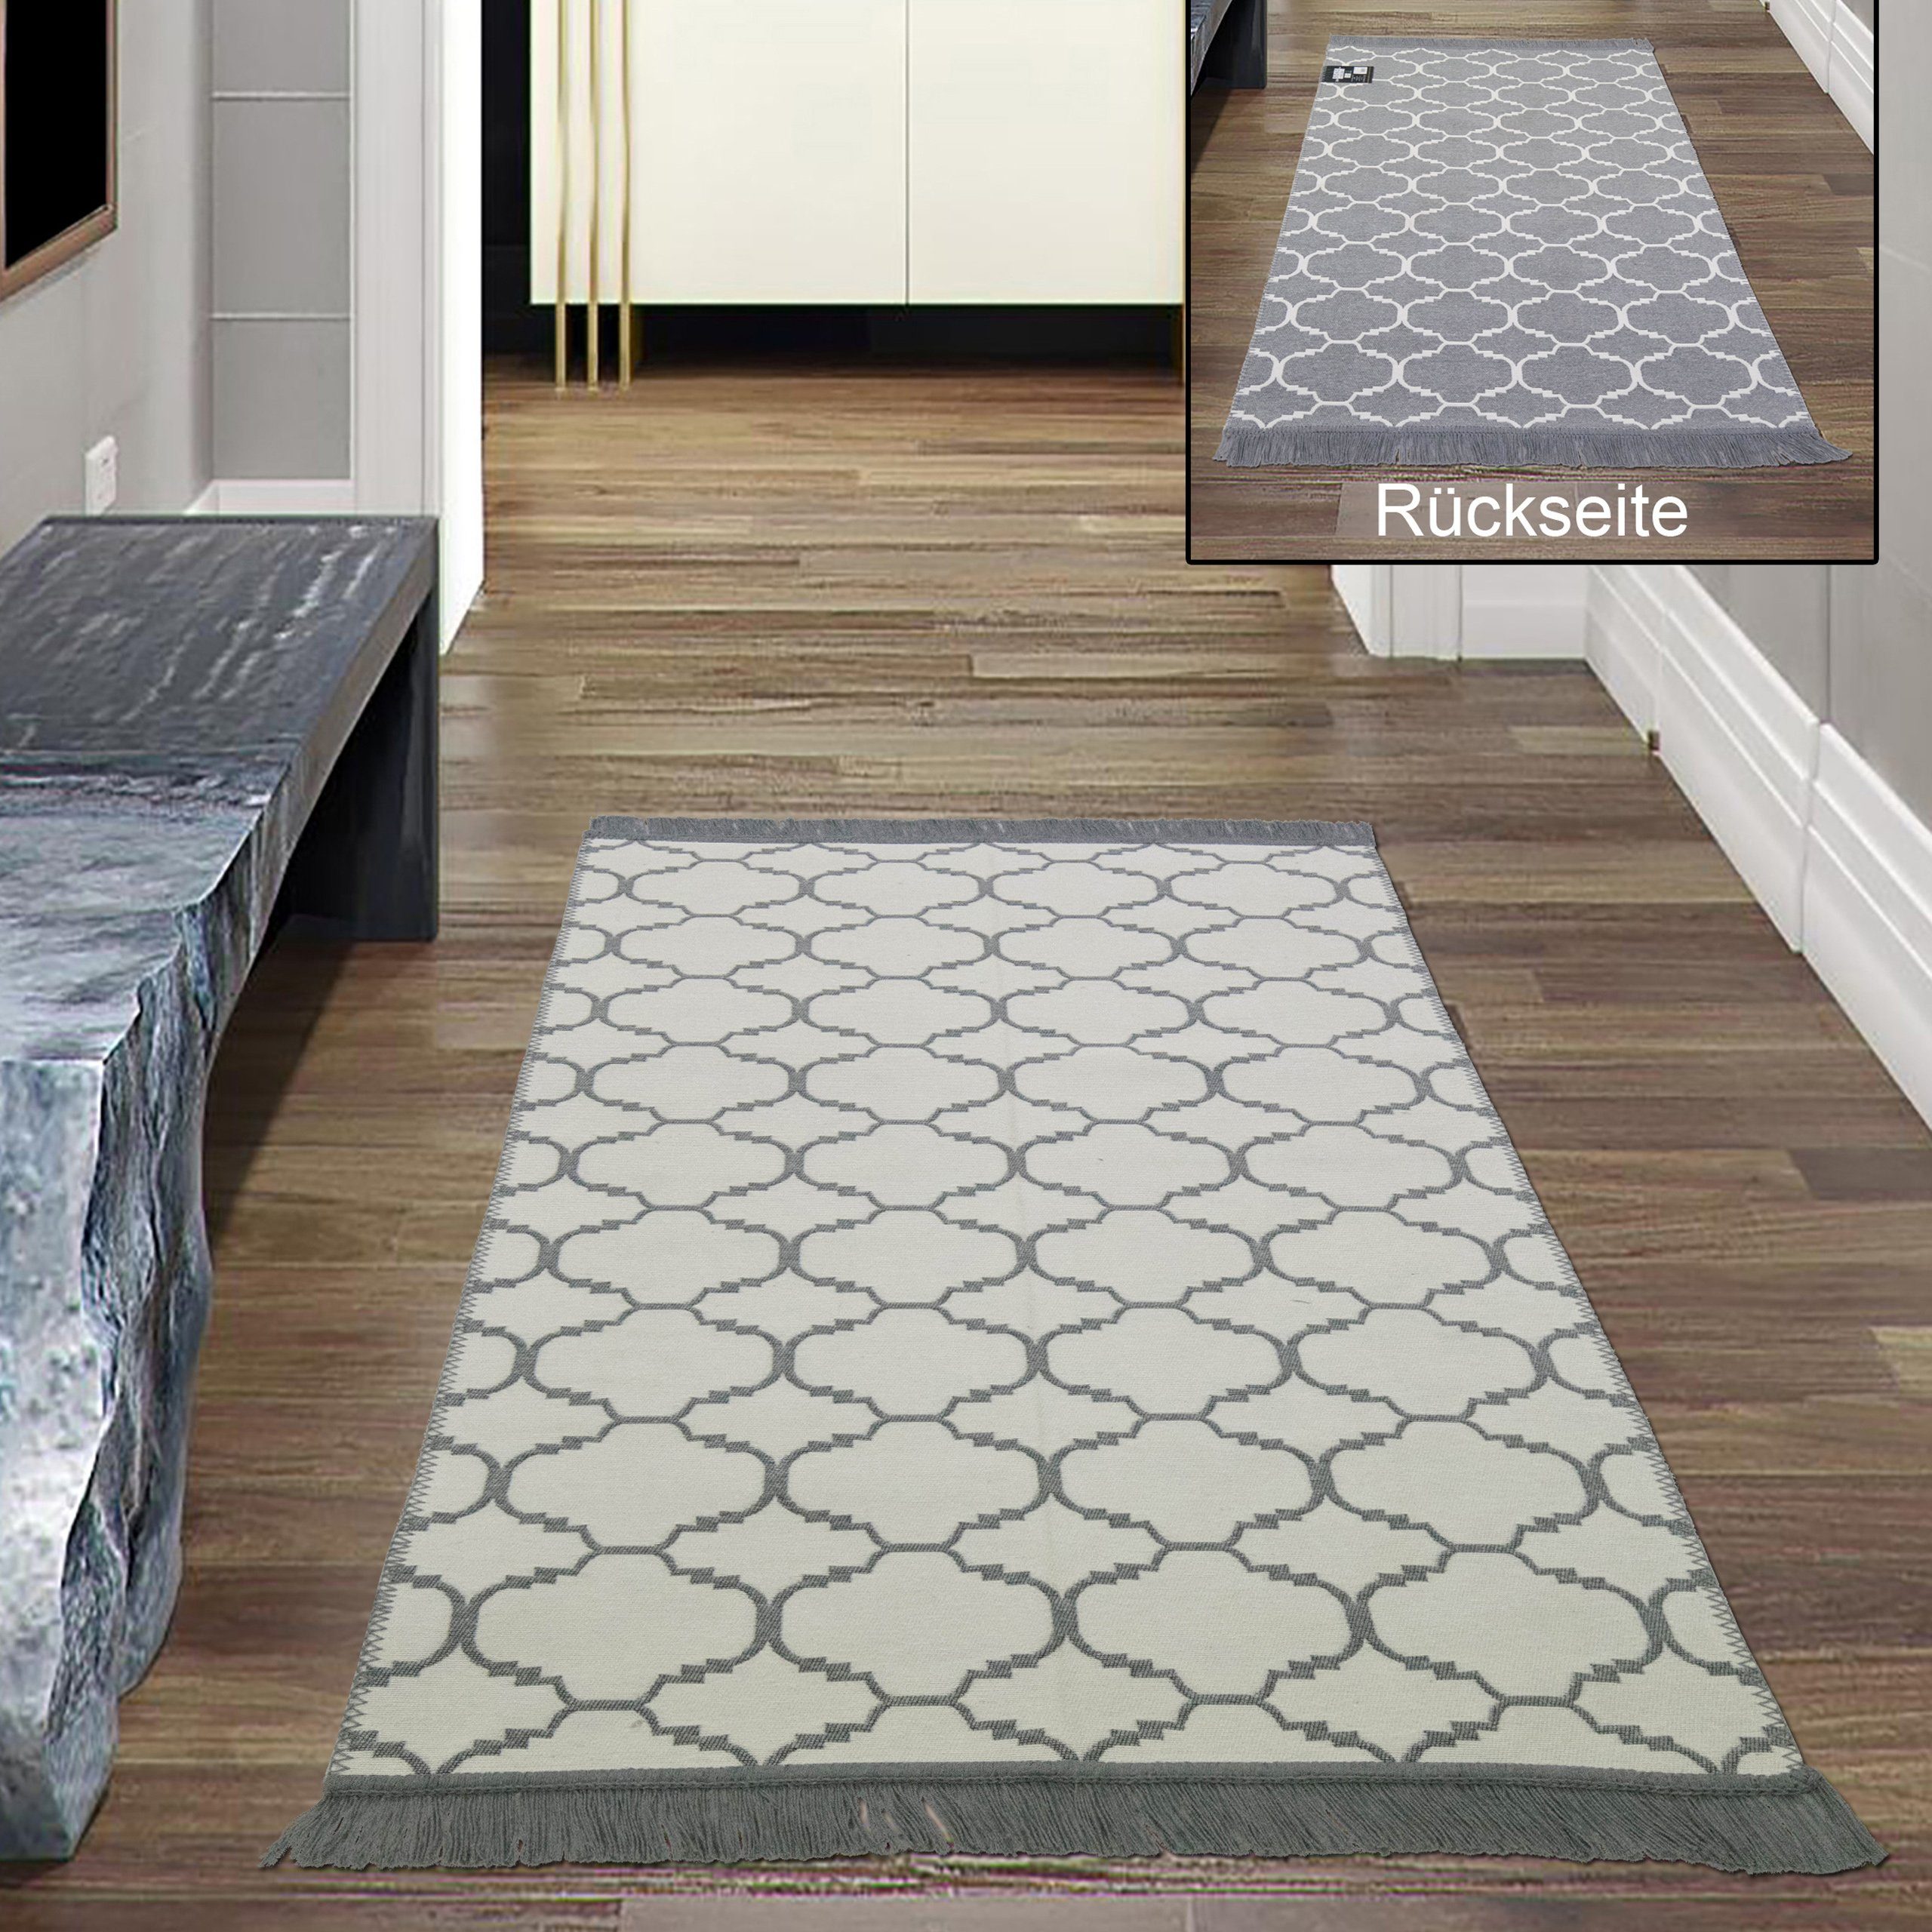 Outdoorteppich Moderner In- & Outdoor Teppich beidseitig verwendbar & waschbar grau weiß creme, Teppich-Traum, rechteckig